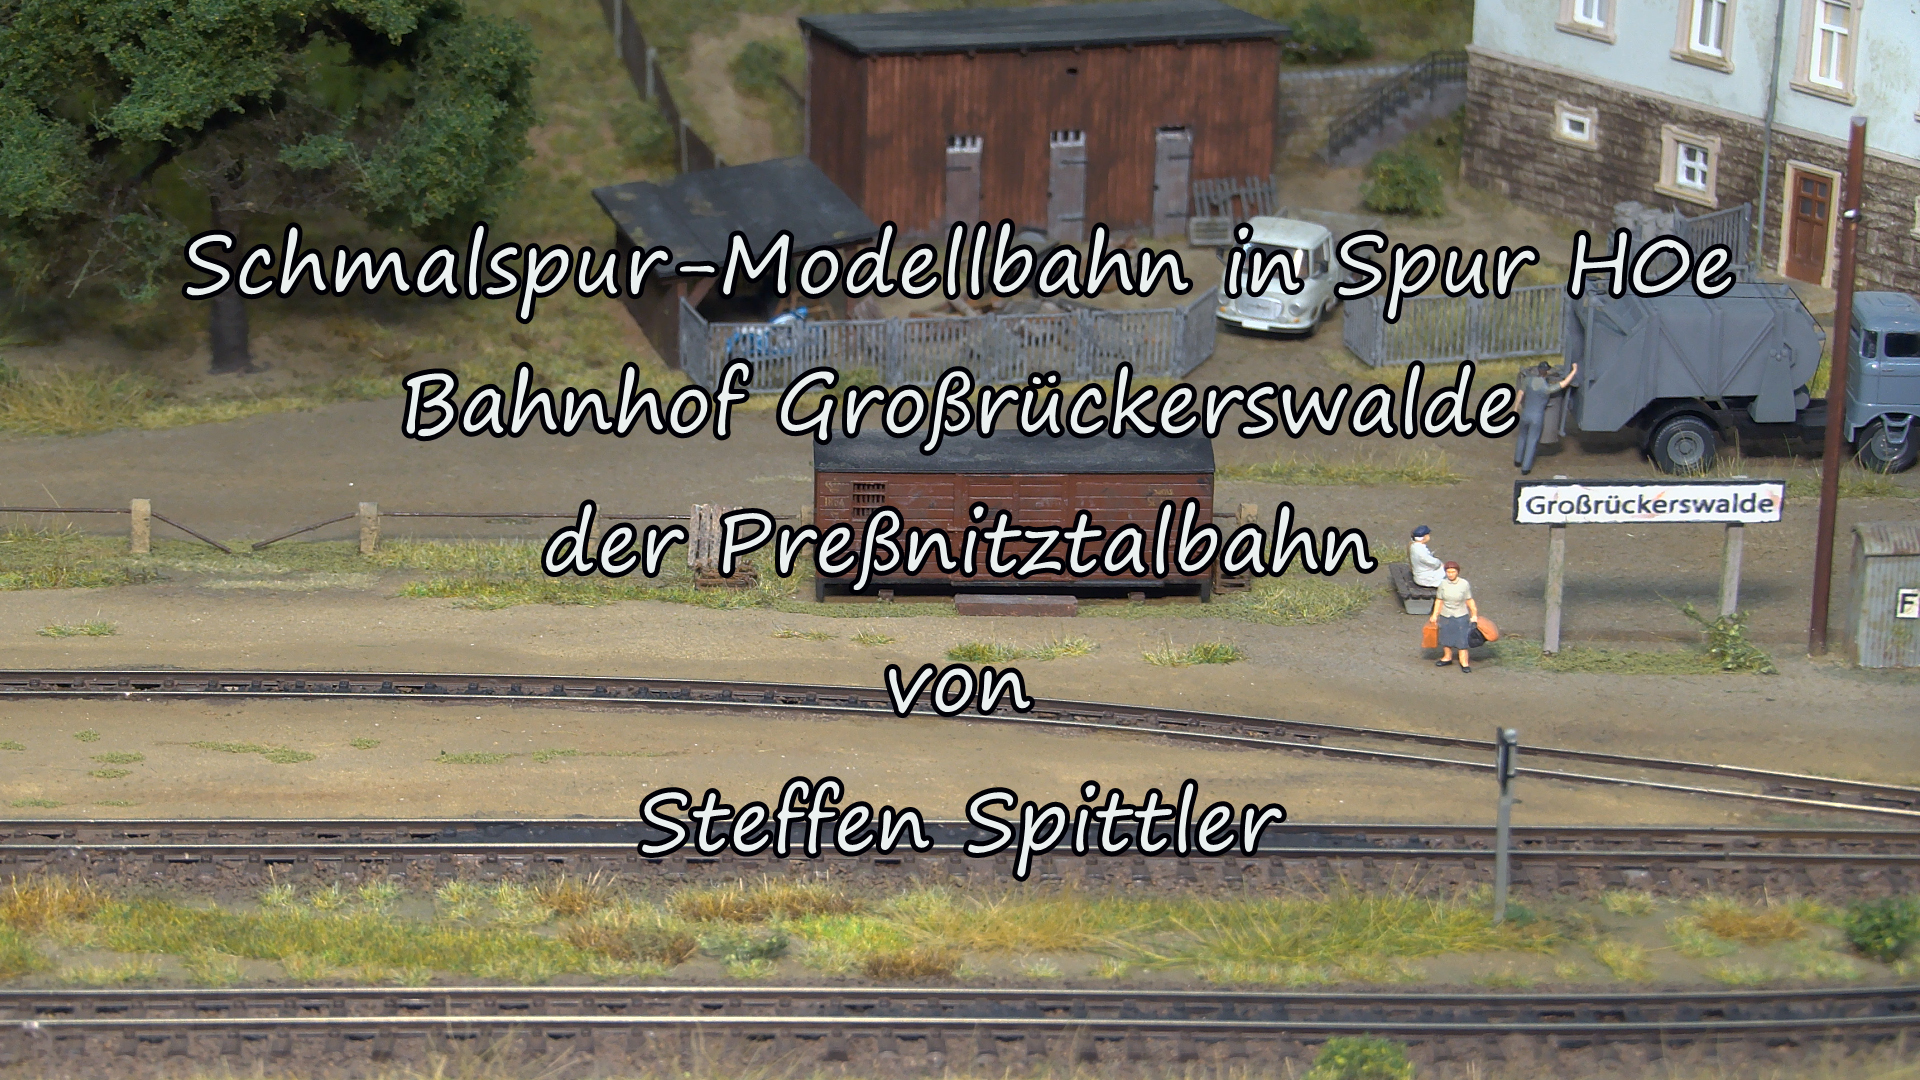 Preßnitztalbahn - Großrückerswalde : Schmalspur Modellbahn Spur H0e mit Dampflok IV K